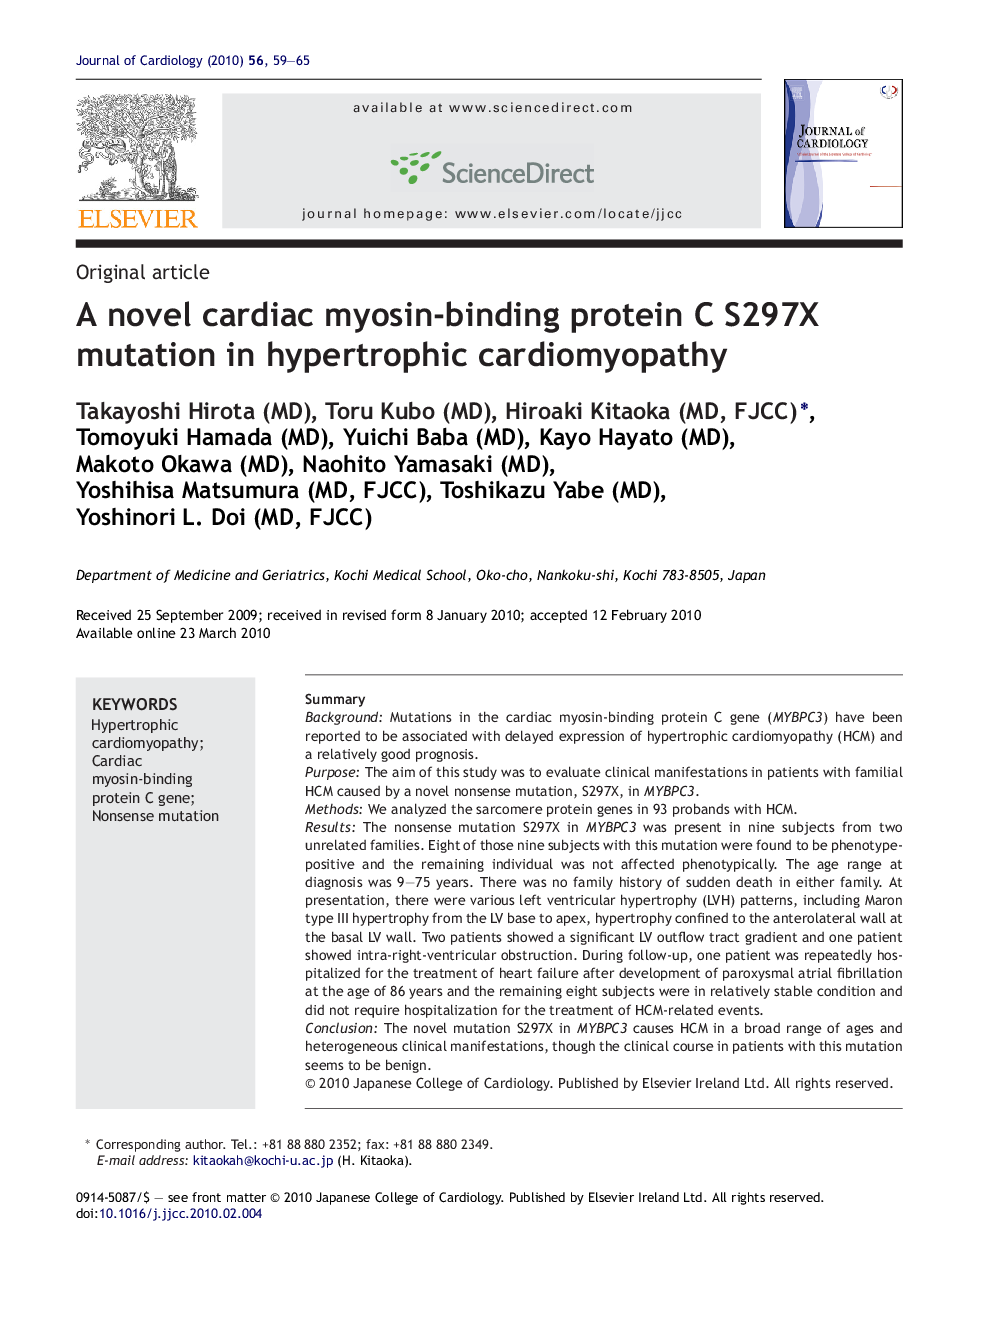 A novel cardiac myosin-binding protein C S297X mutation in hypertrophic cardiomyopathy